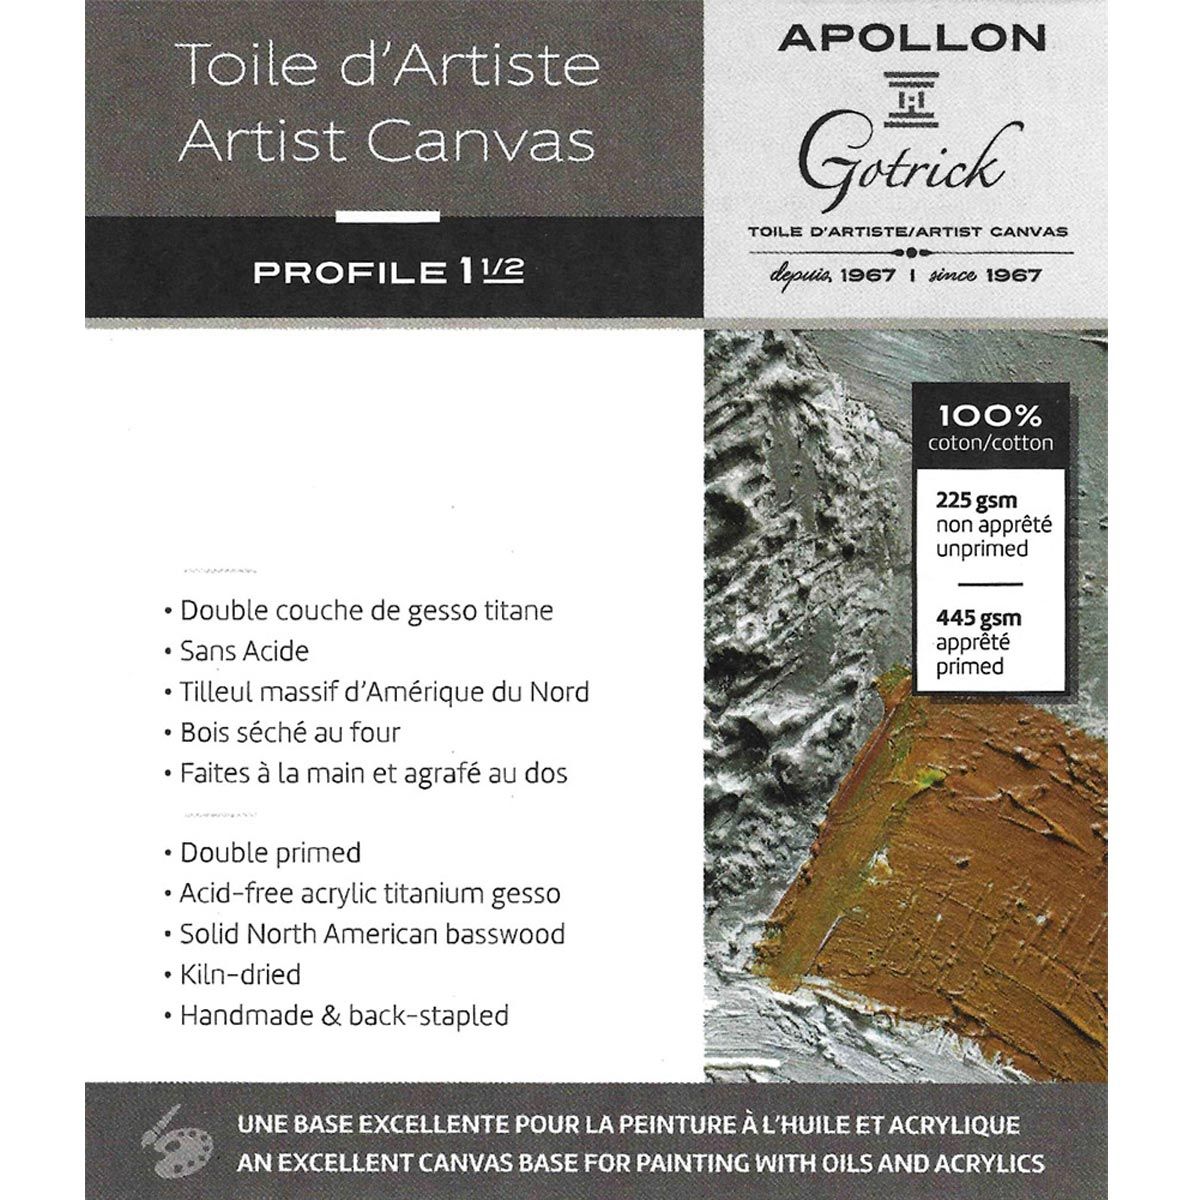 Apollon Gotrick Gallery Artist Canvas Profile 1½